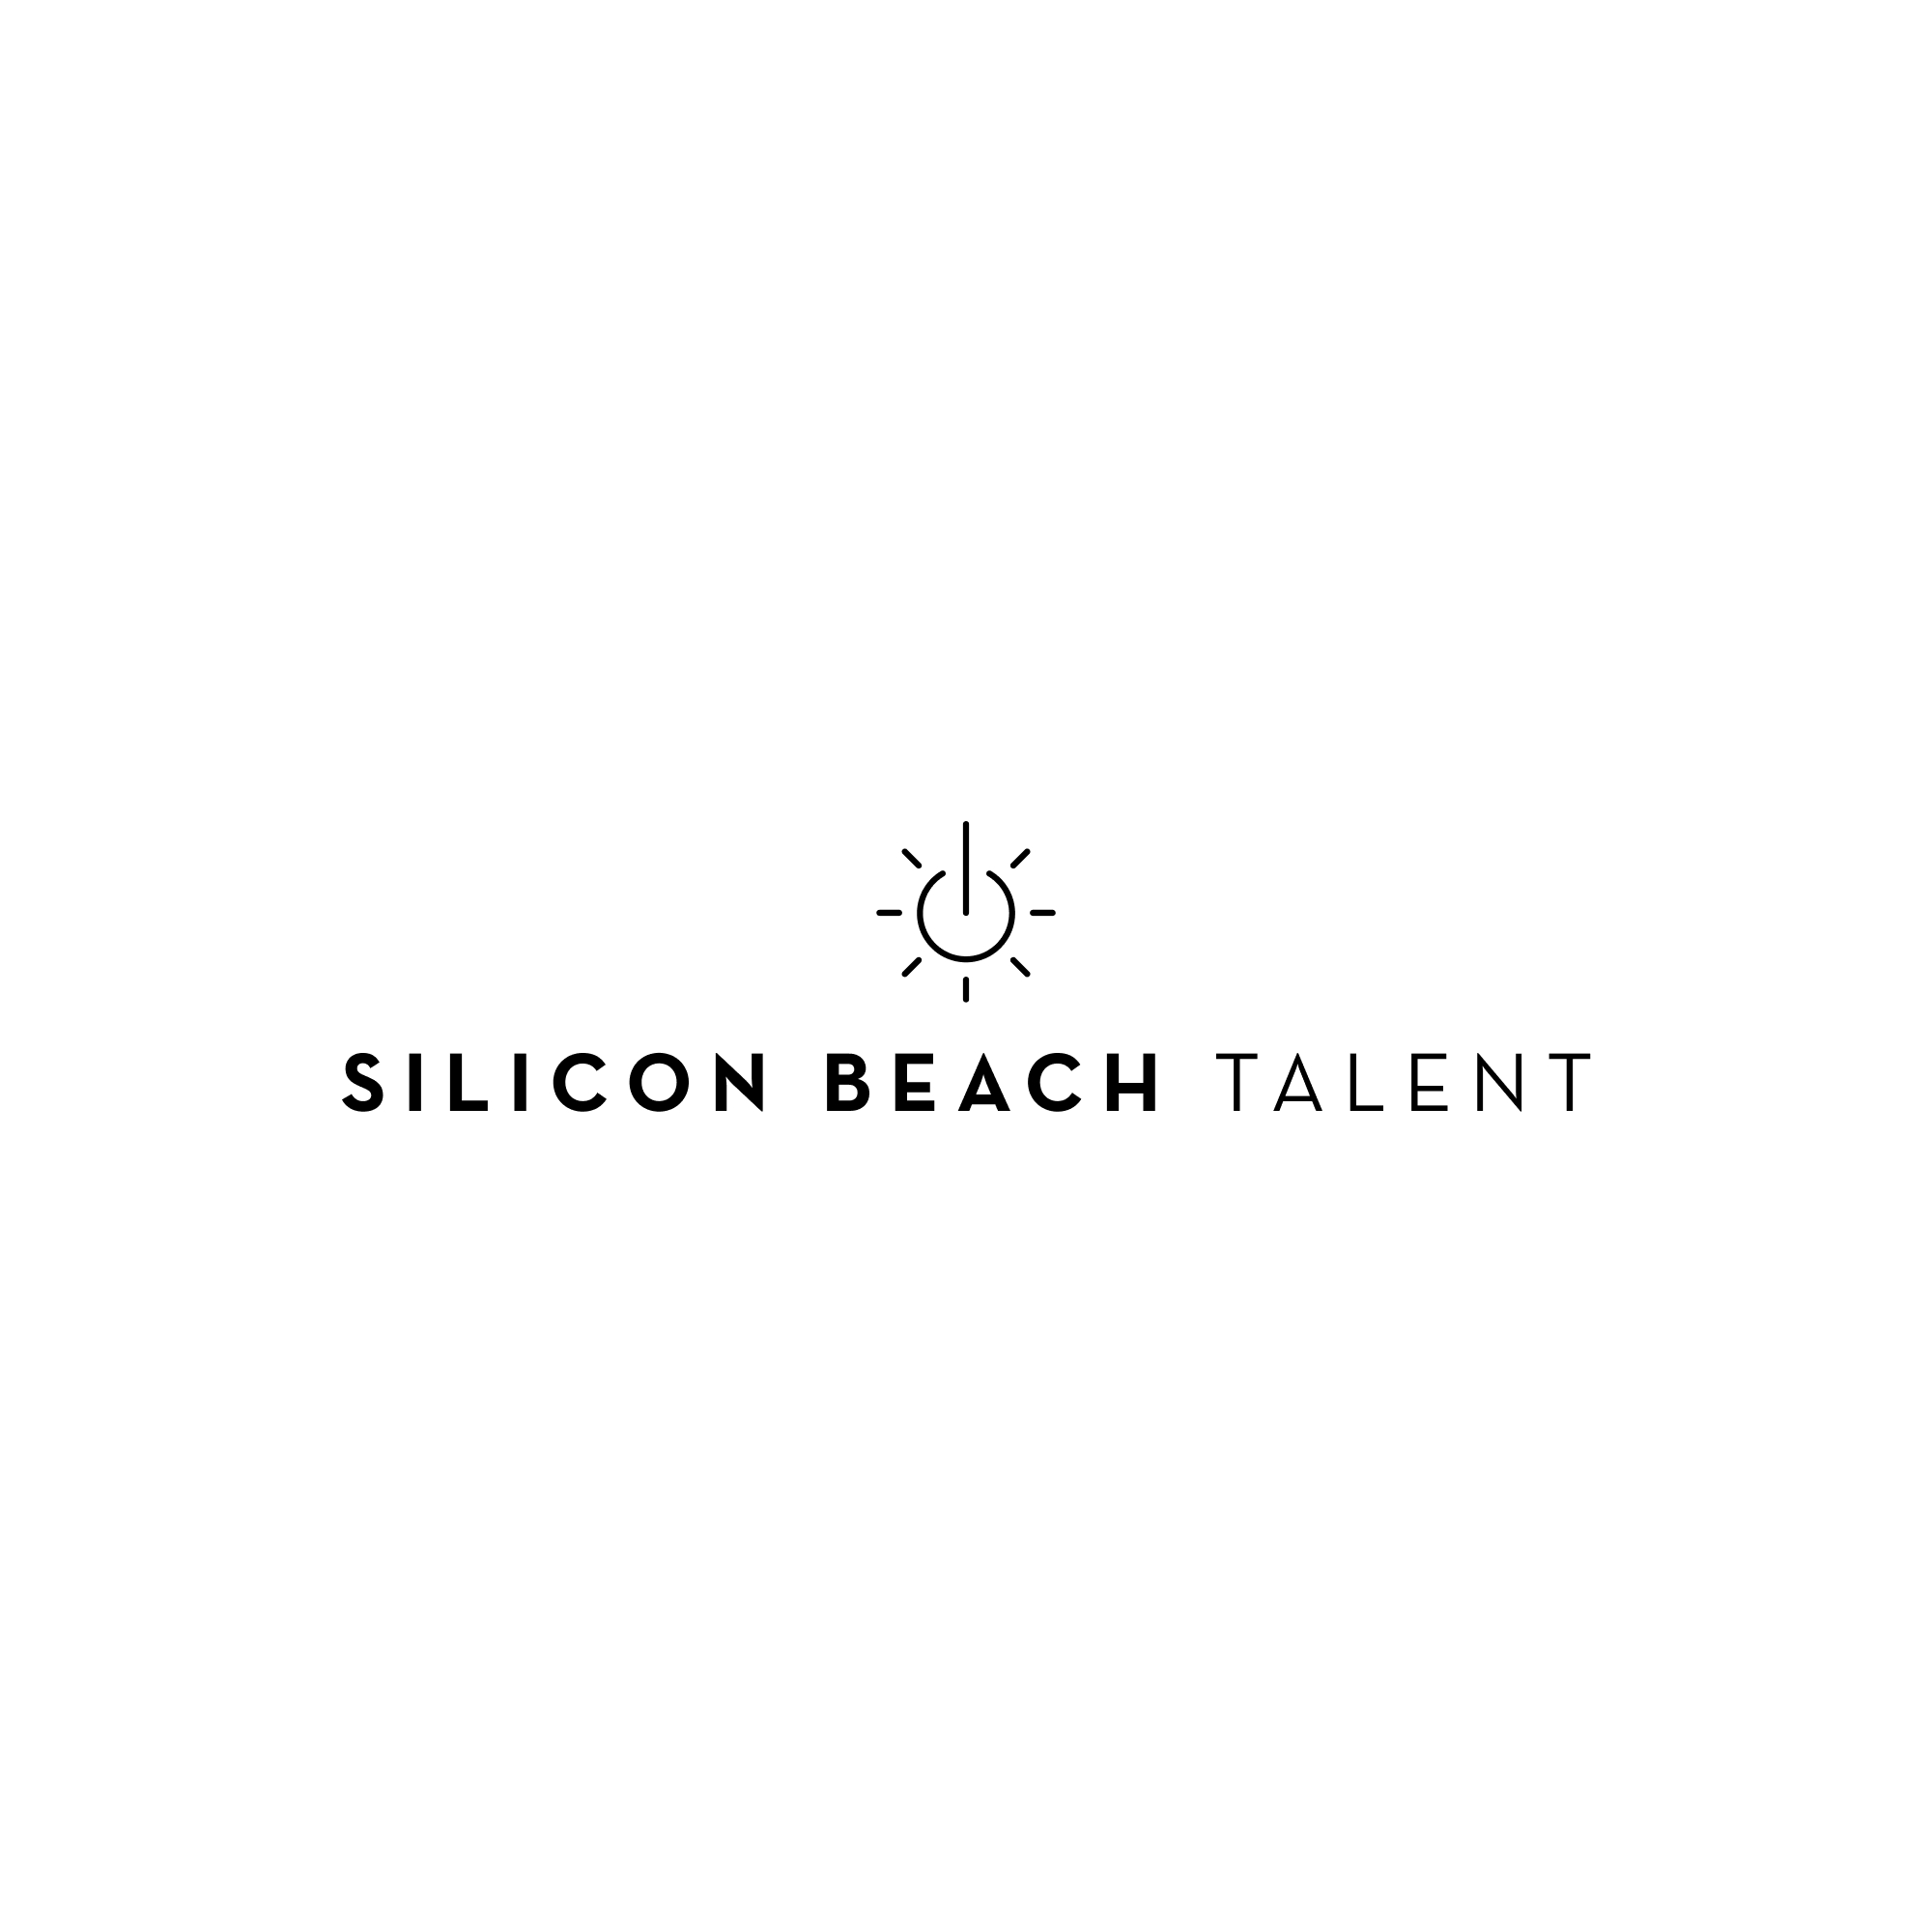 Silicon Beach Talent